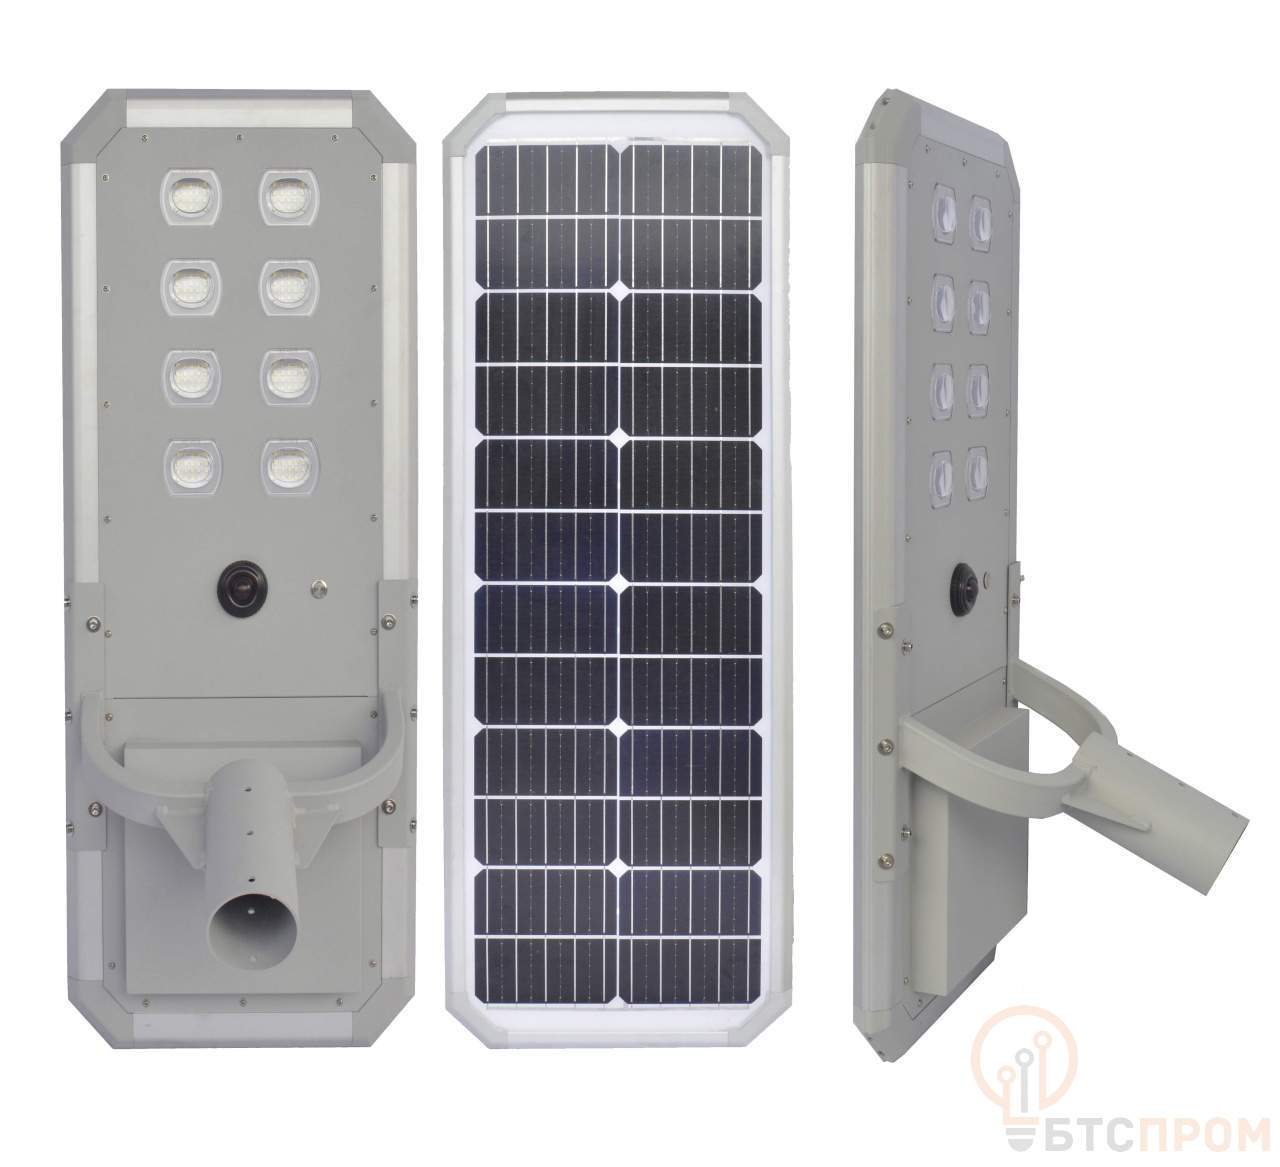  Уличный светодиодный светильник на солнечной батарее Led Favourite JX-SSL-AL4-30W фото в каталоге от BTSprom.by